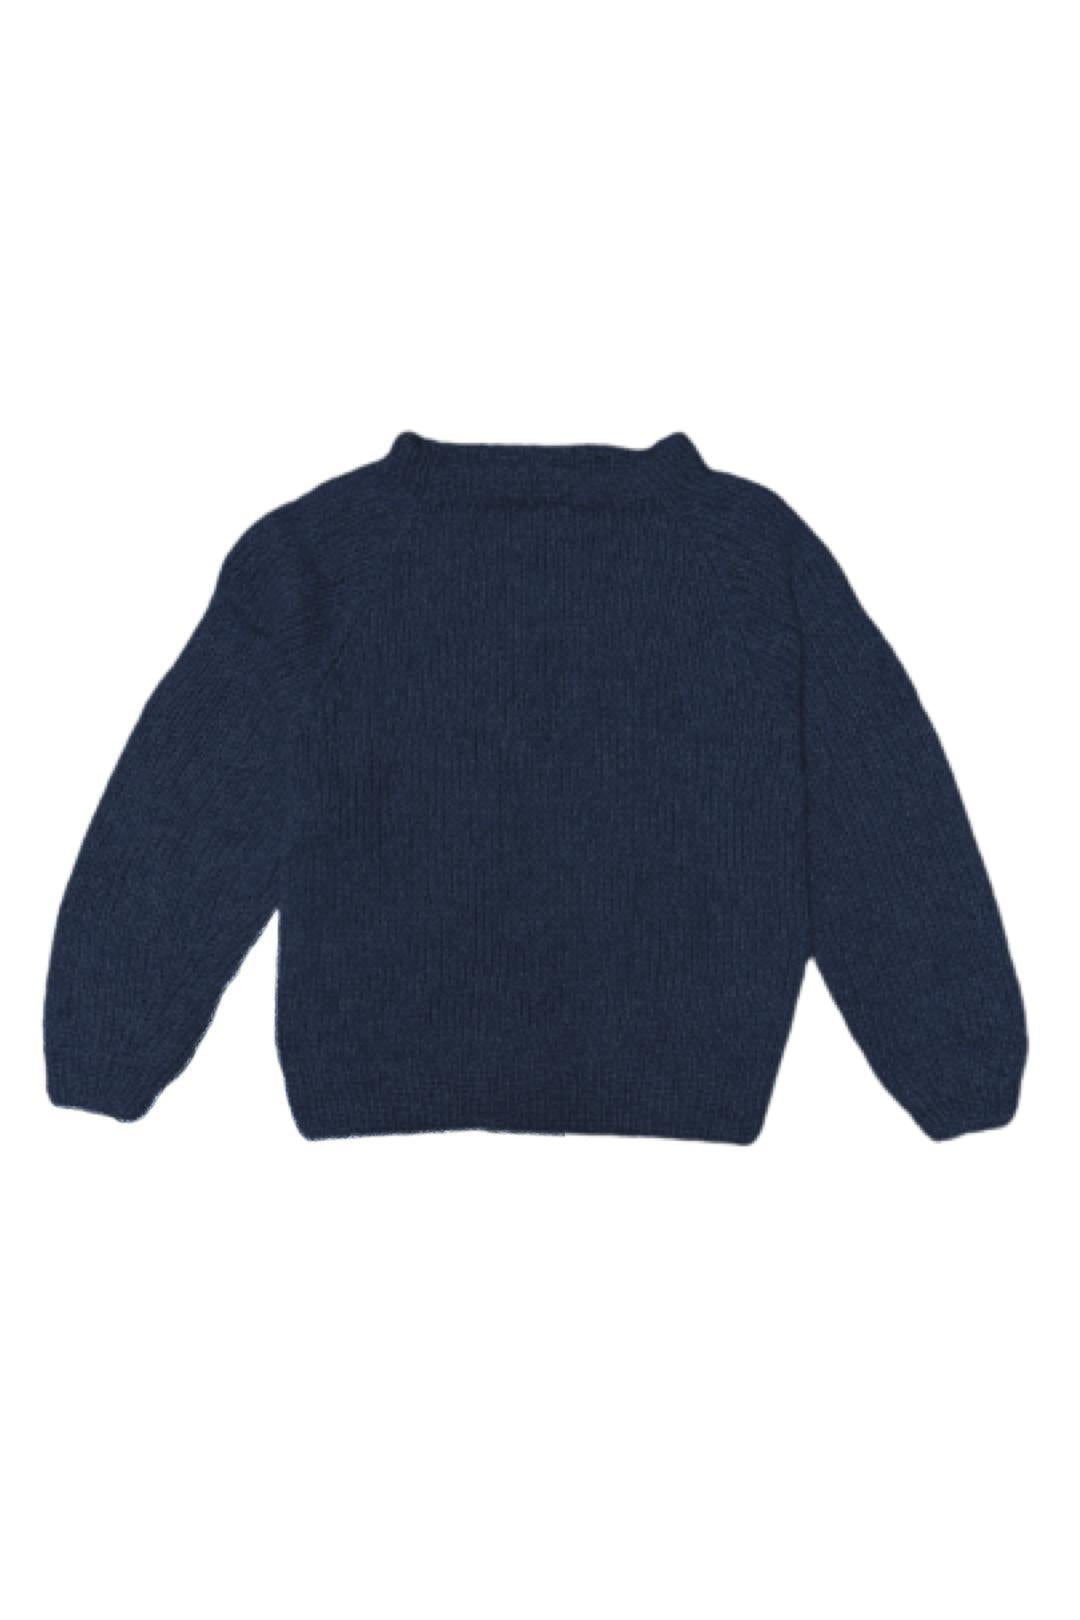 Coffee Peace Sweater - Coffee Beanies-Sophies.dk #farve_dark-blue